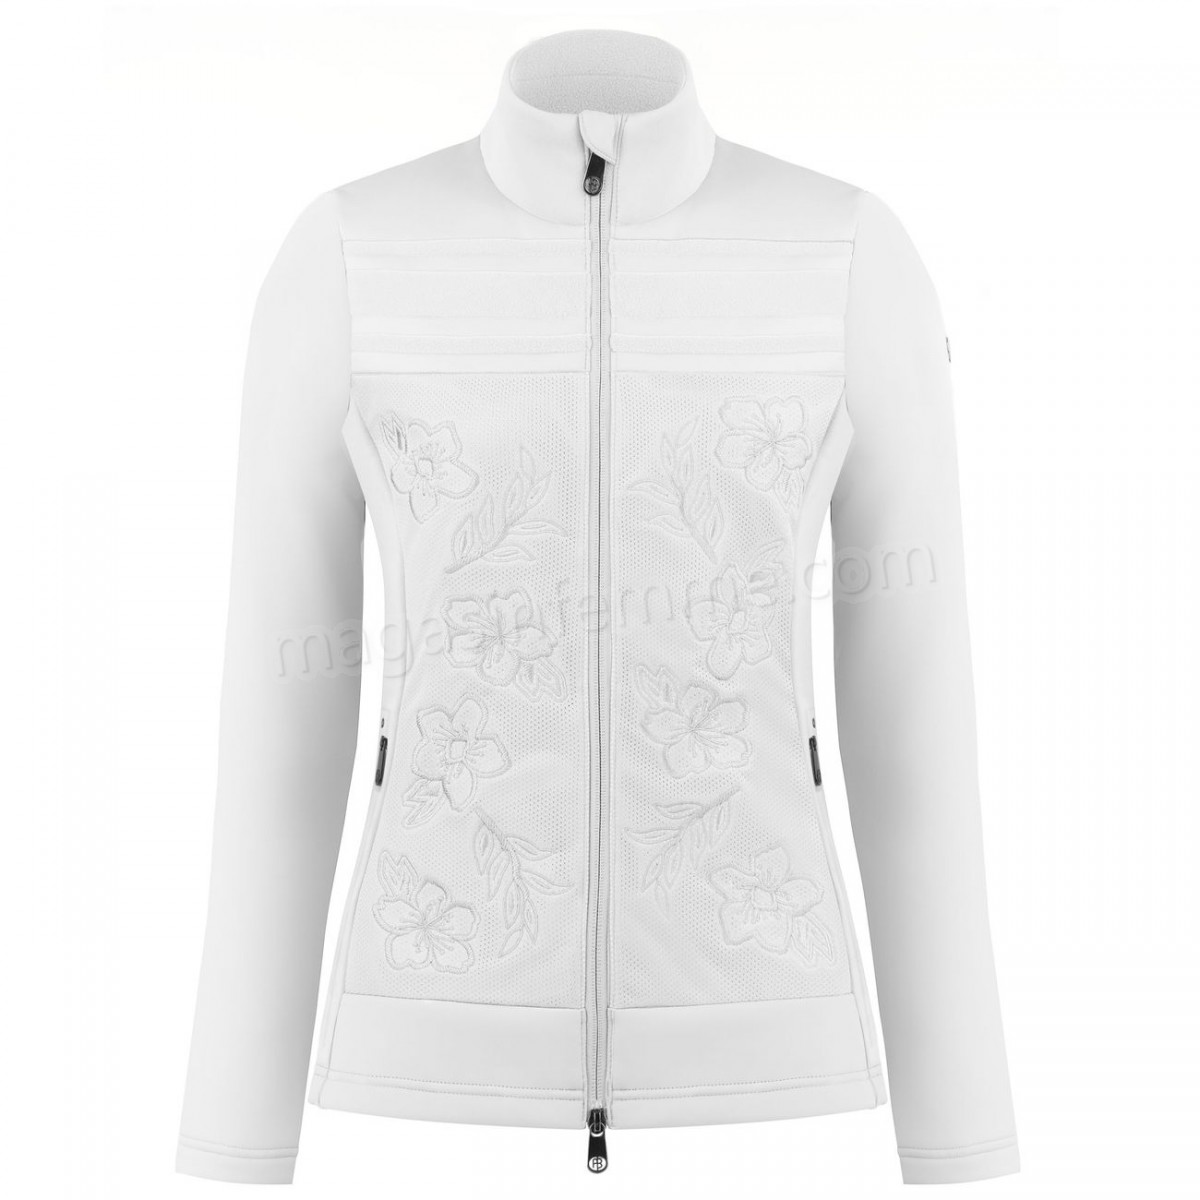 Poivre Blanc-Sports d'hiver femme POIVRE BLANC Veste En Polaire Poivre Blanc Hybrid Stretch Fleece Jacket 1605 White Femme en solde - -1